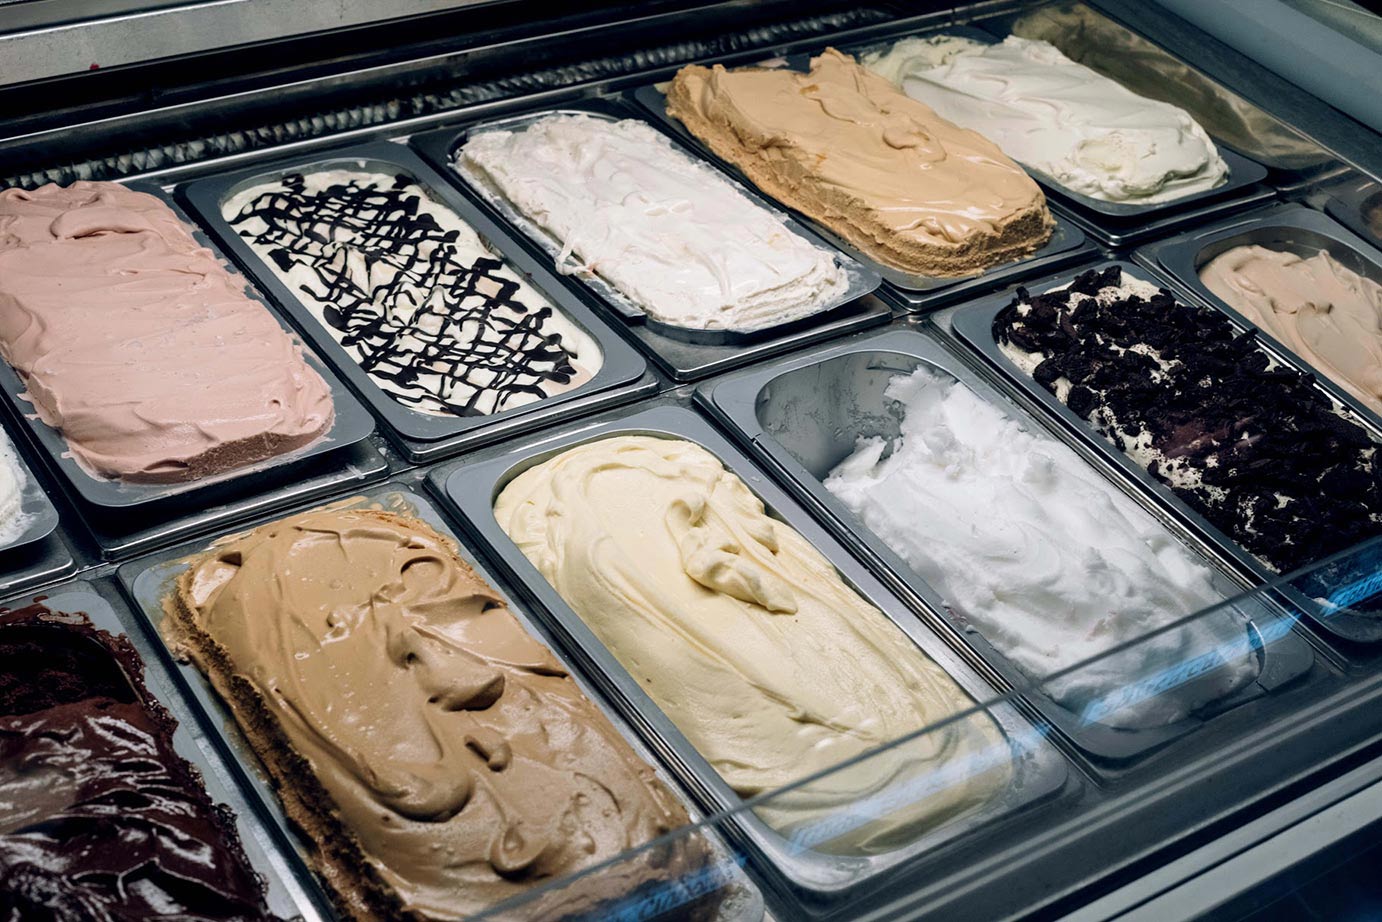 Interior, different types of ice cream